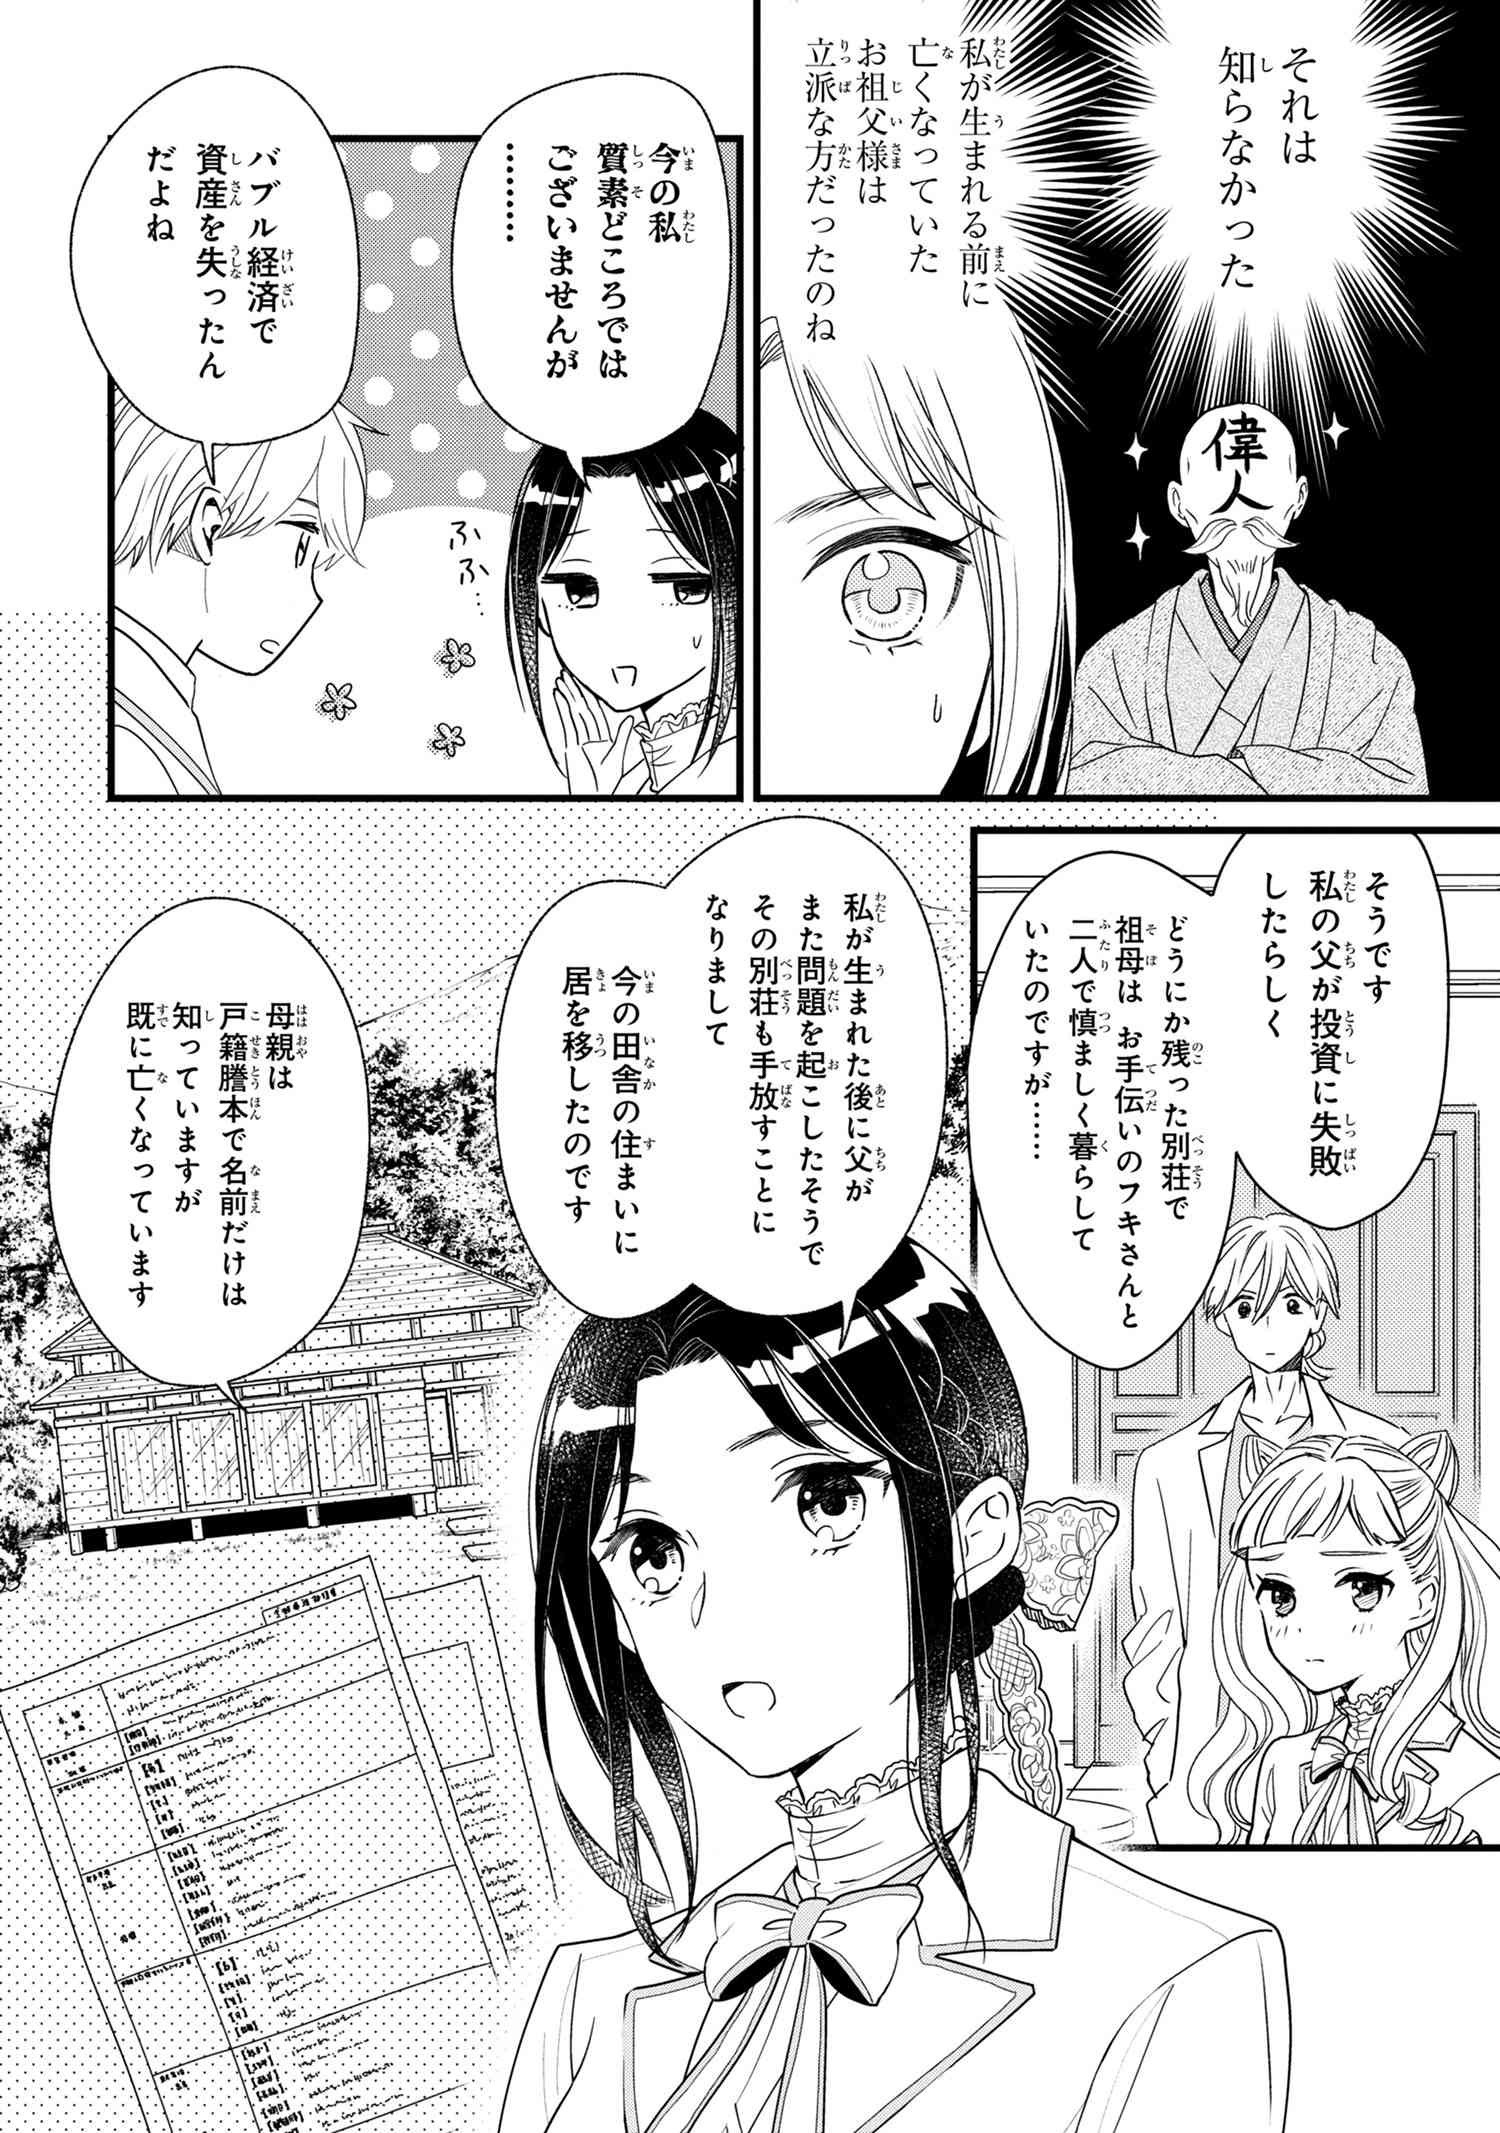 Reiko no Fuugi Akuyaku Reijou to Yobarete imasu ga, tada no Binbou Musume desu - Chapter 3-2 - Page 2